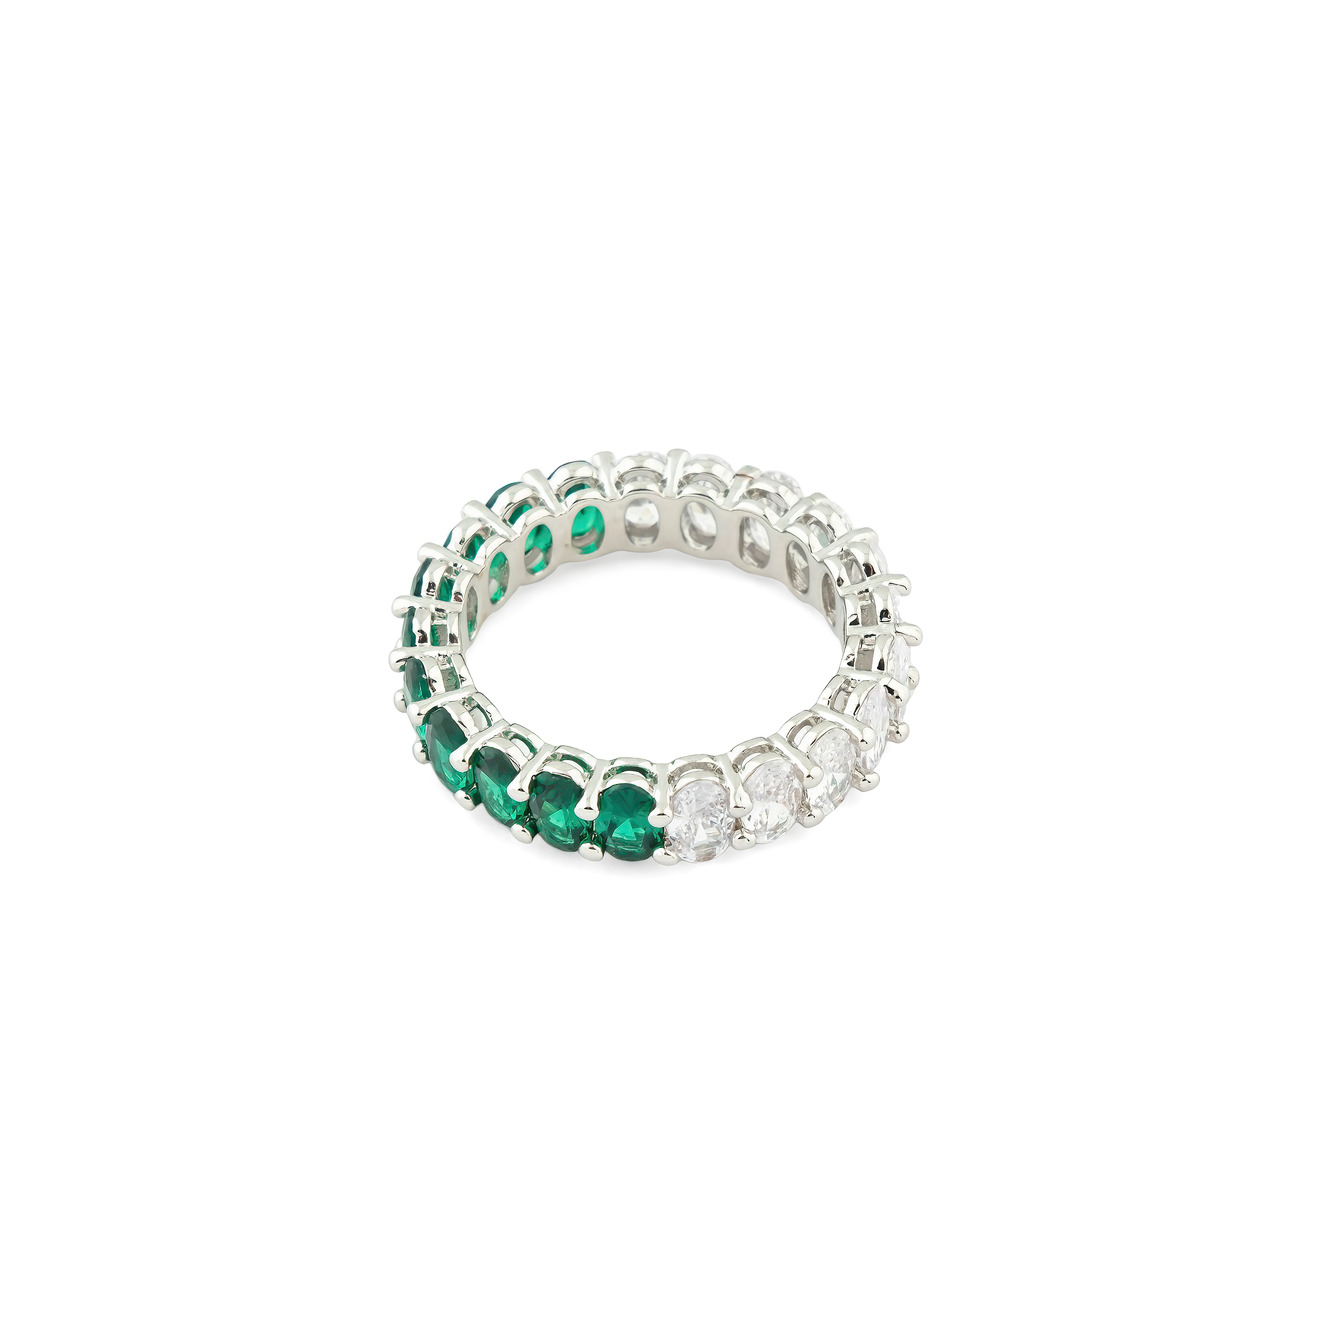 Herald Percy Серебристое кольцо с овалами белых и зеленых кристаллов herald percy золотистое колье из белых кристаллов